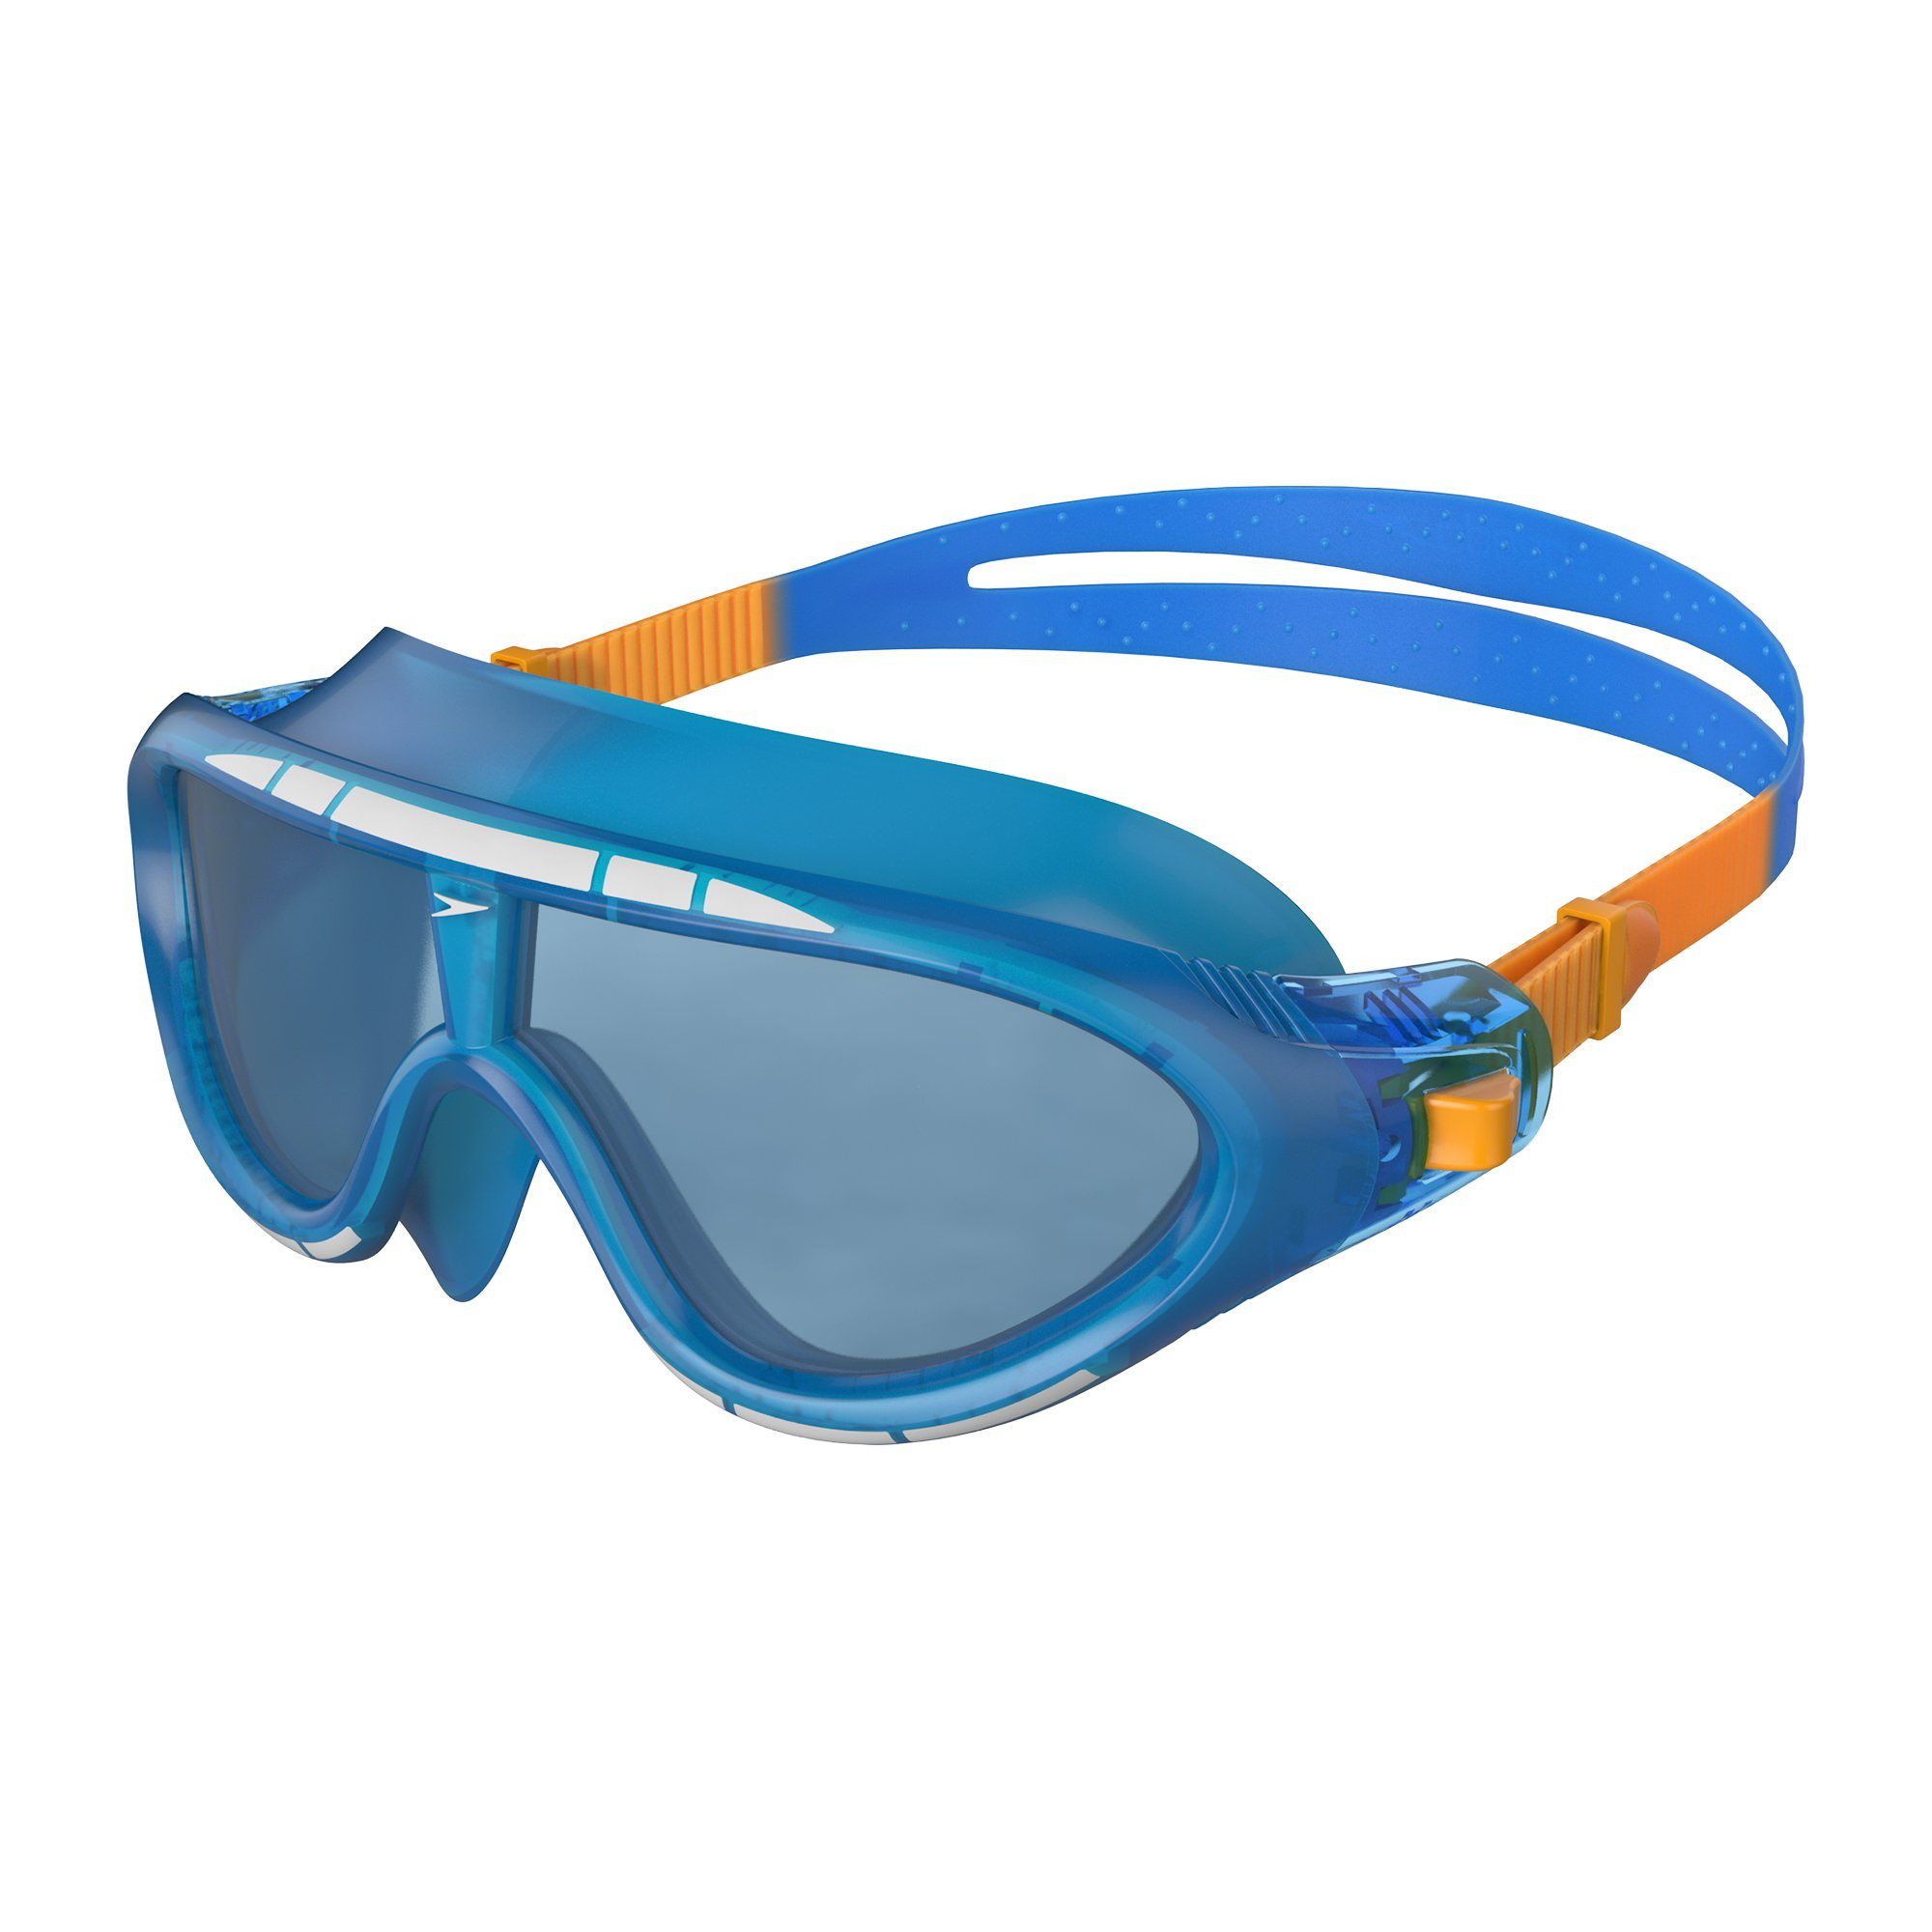 Speedo Schwimmbrille Speedo Biofuse Rift Junior Blue/Orange, Hoher Tragekomfort durch flexiblen Rahmen